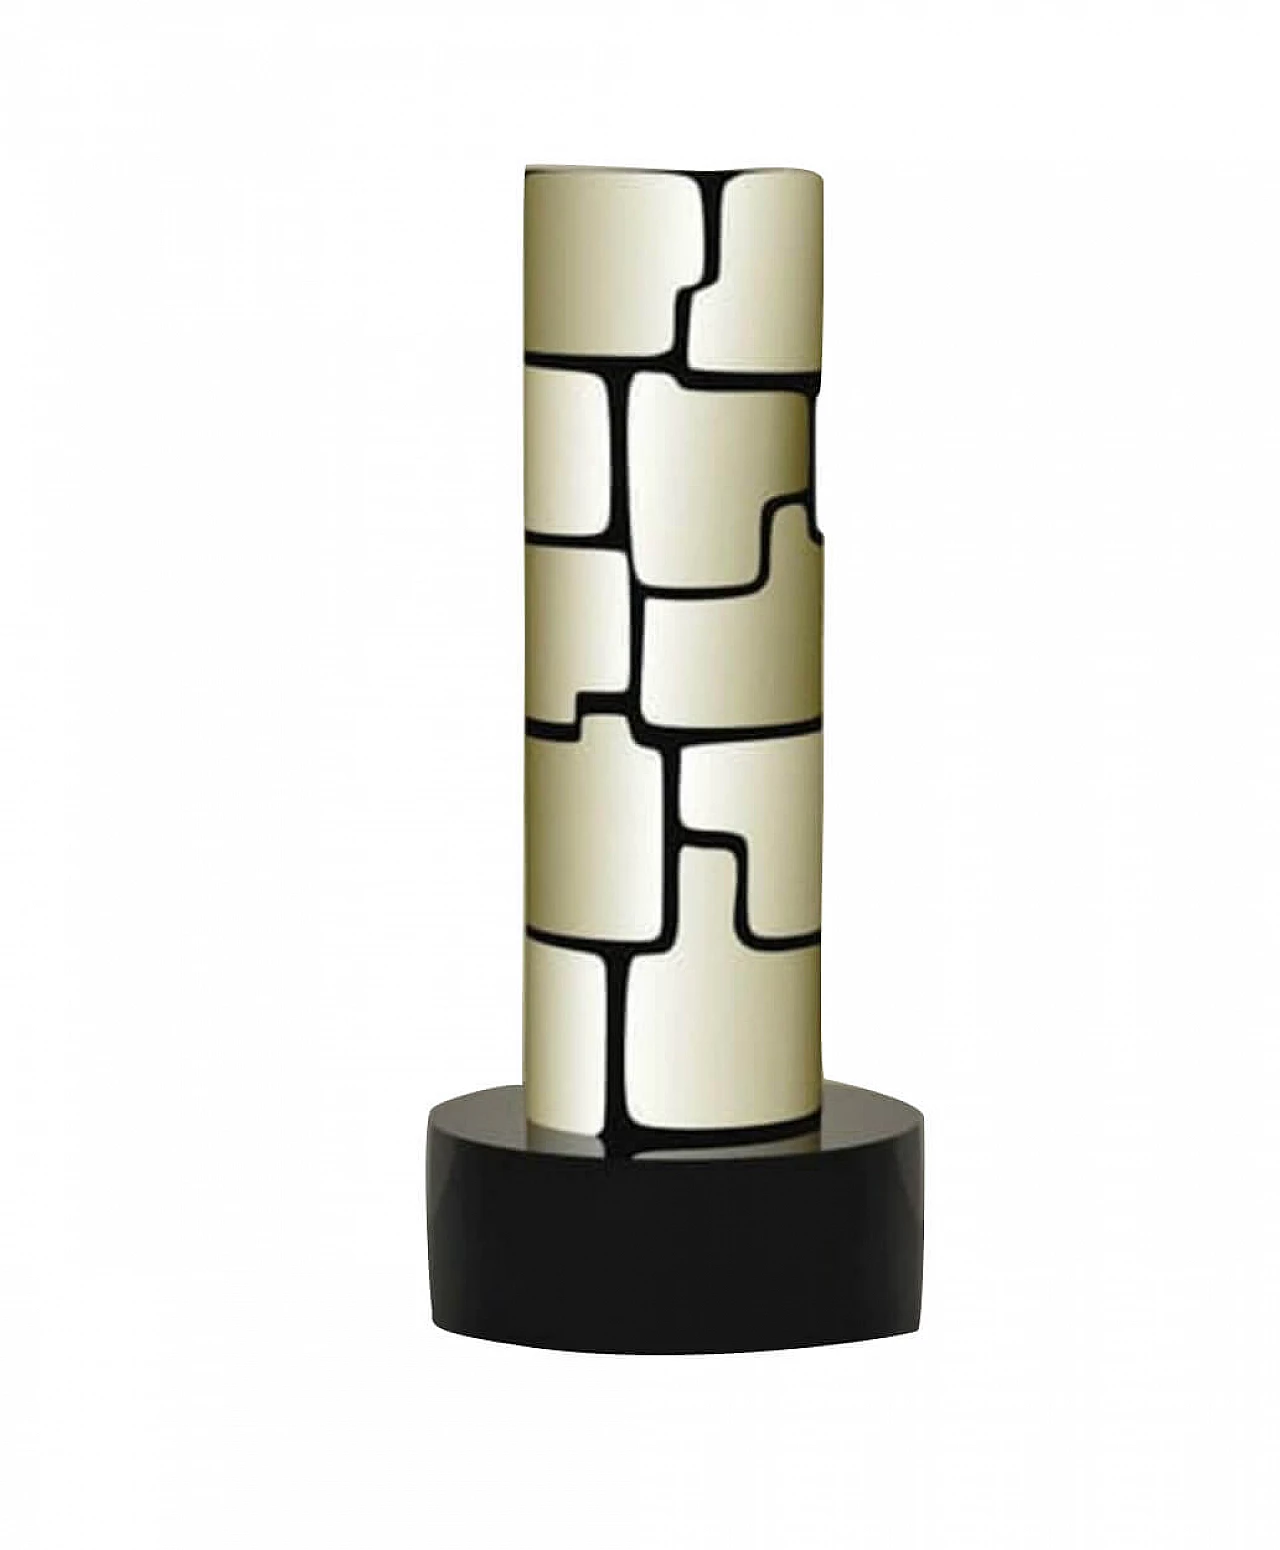 Plexiglas table lamp, 2000 1112990